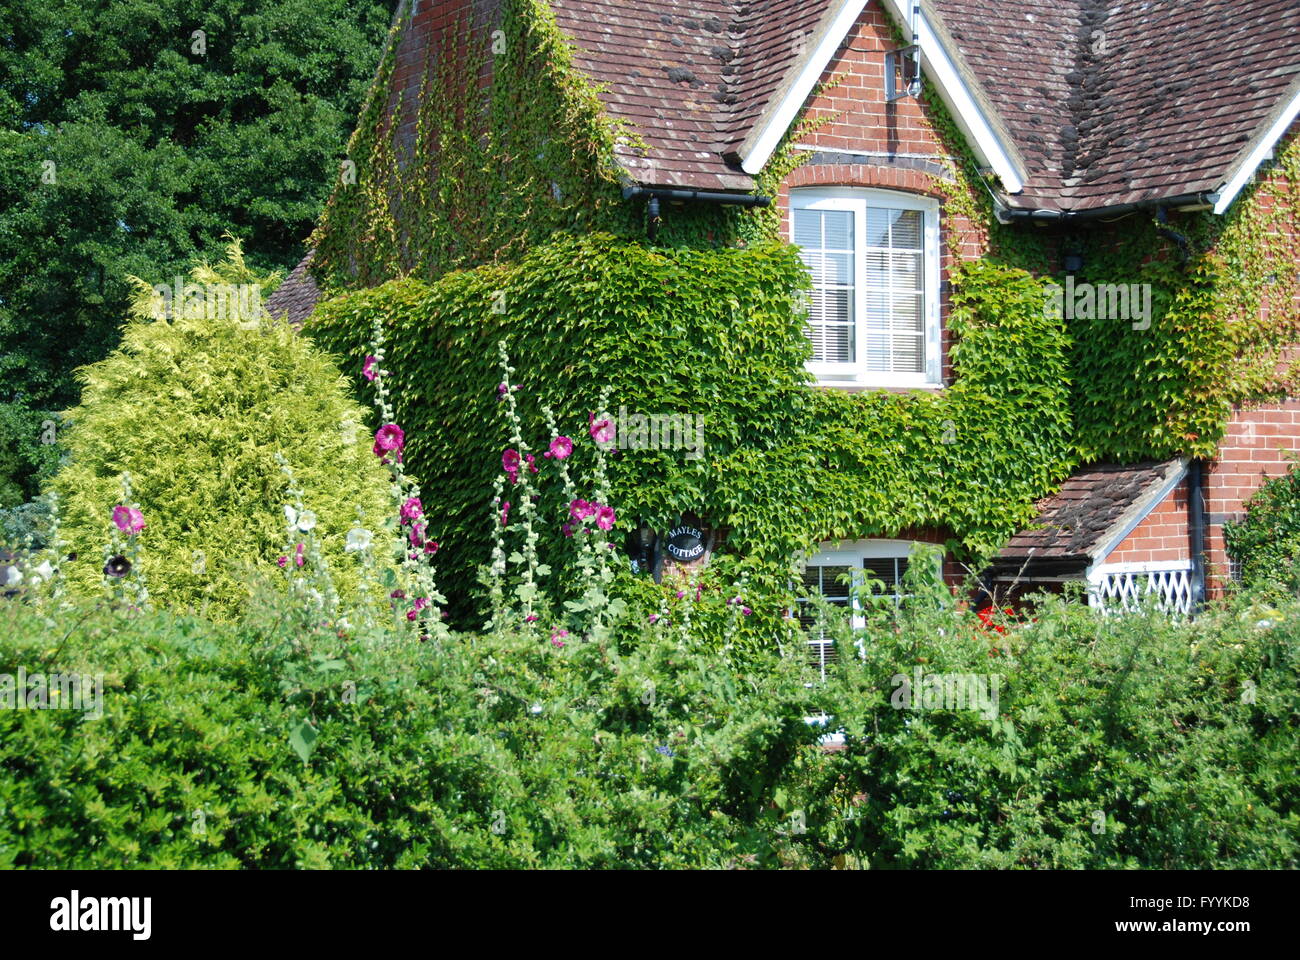 Foliage and flowers at cottage Wickham Hampshire UK Stock Photo